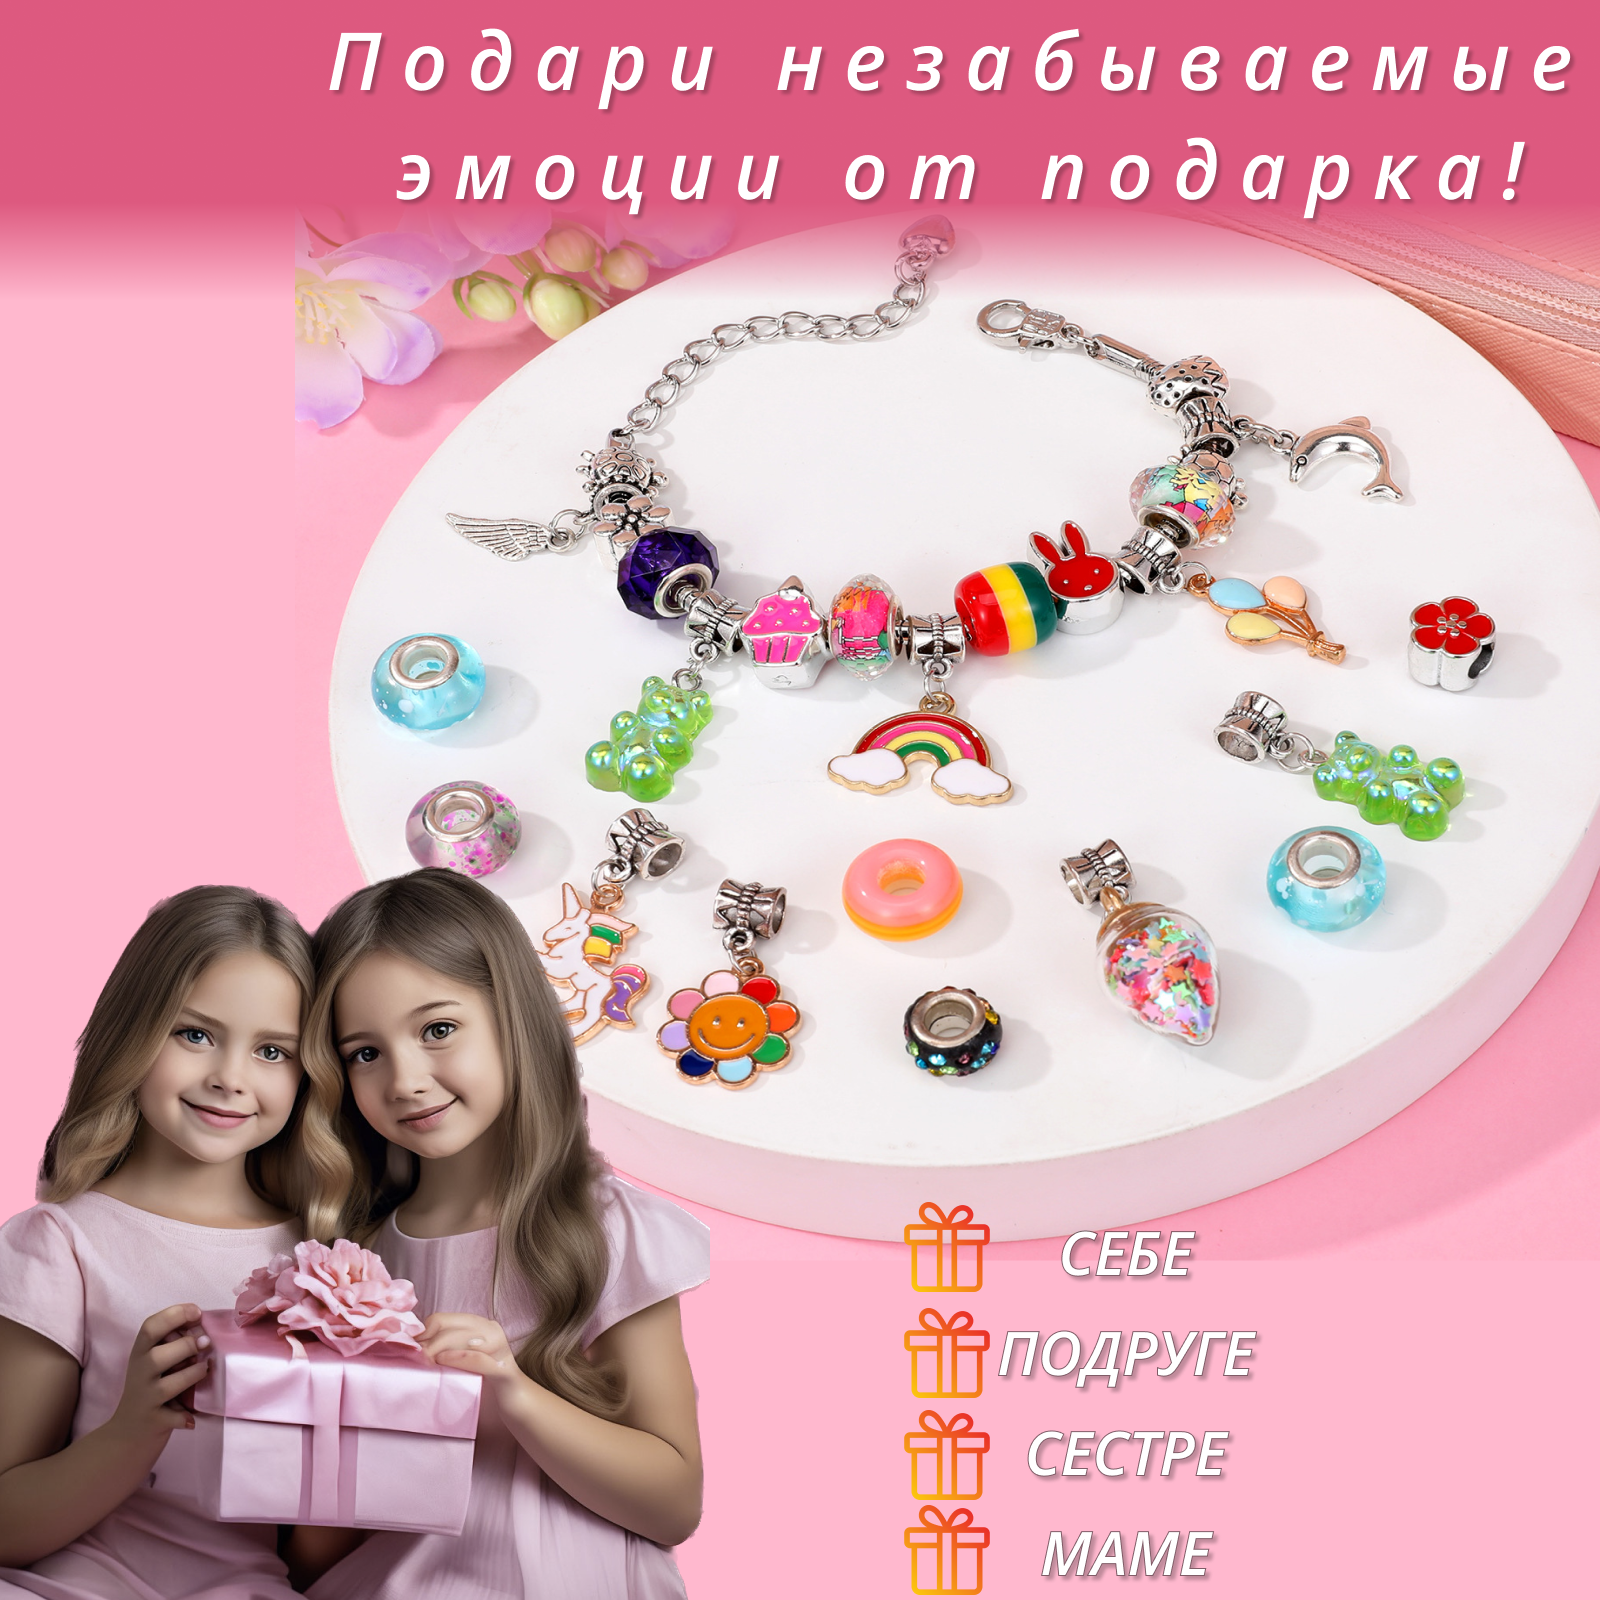 Подарочный Набор для создания украшений для девочек "Шкатулка с кошельком" и тату подарок для девочки на Новый год, день рождения 8 марта